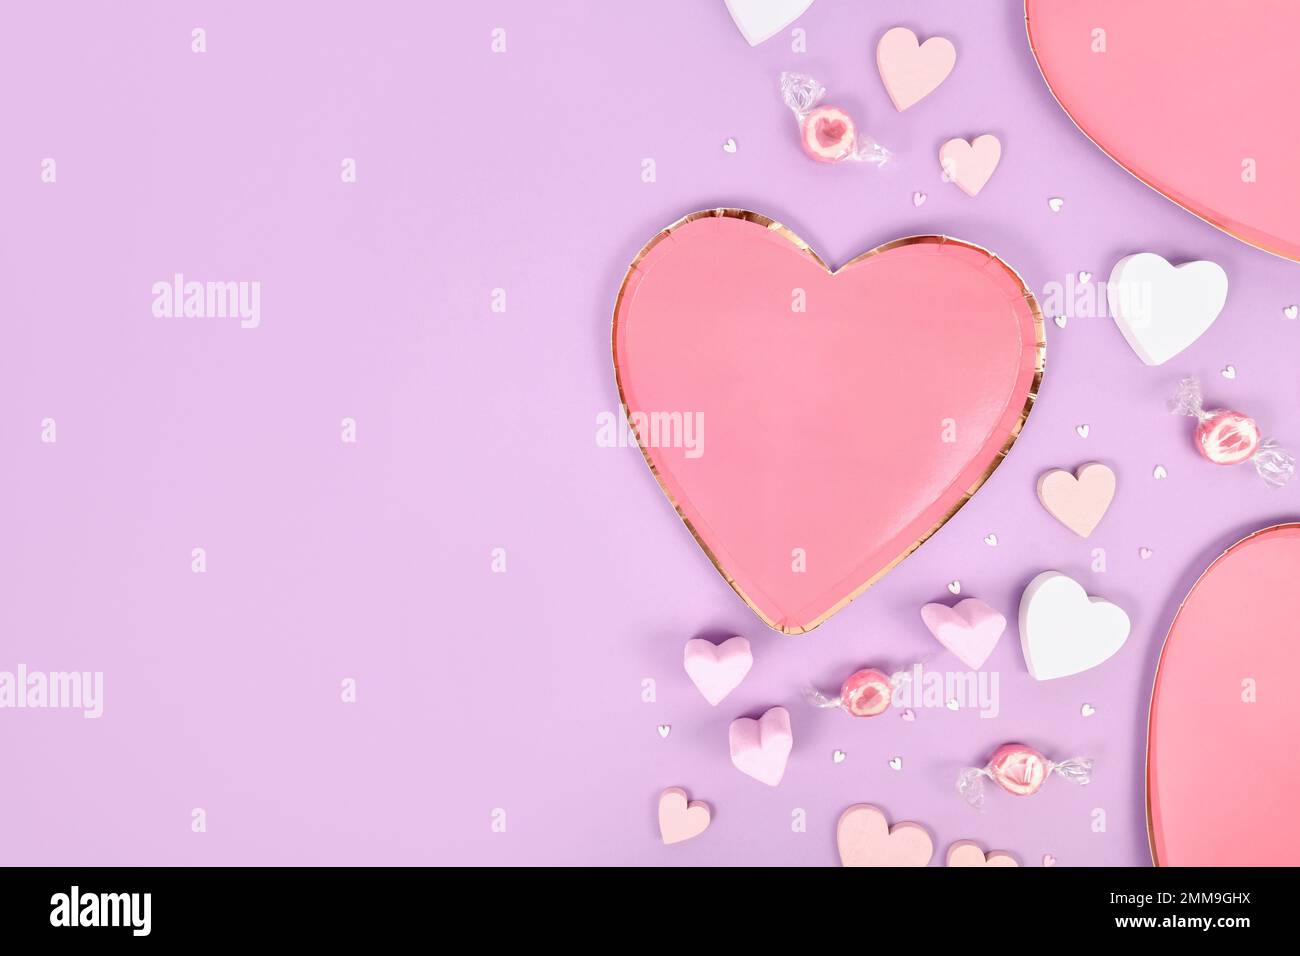 Plat couleur pastel pour la Saint-Valentin avec plaques en forme de coeur, ornements en coeur et bonbons sur fond violet Banque D'Images